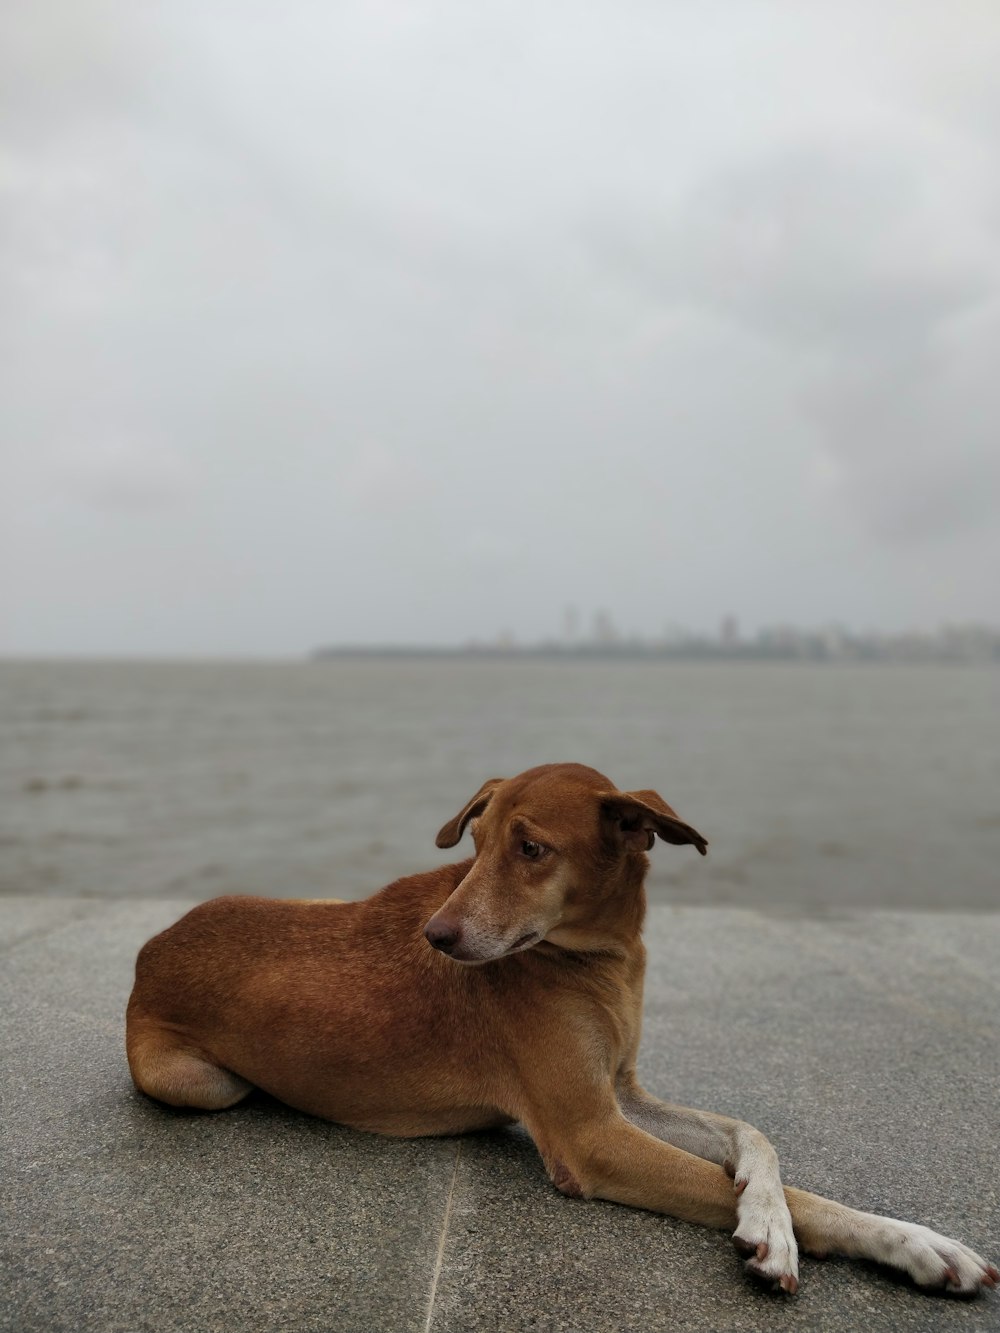 Kurzhaariger brauner Hund, der an einem bewölkten Tag auf dem Bürgersteig liegt